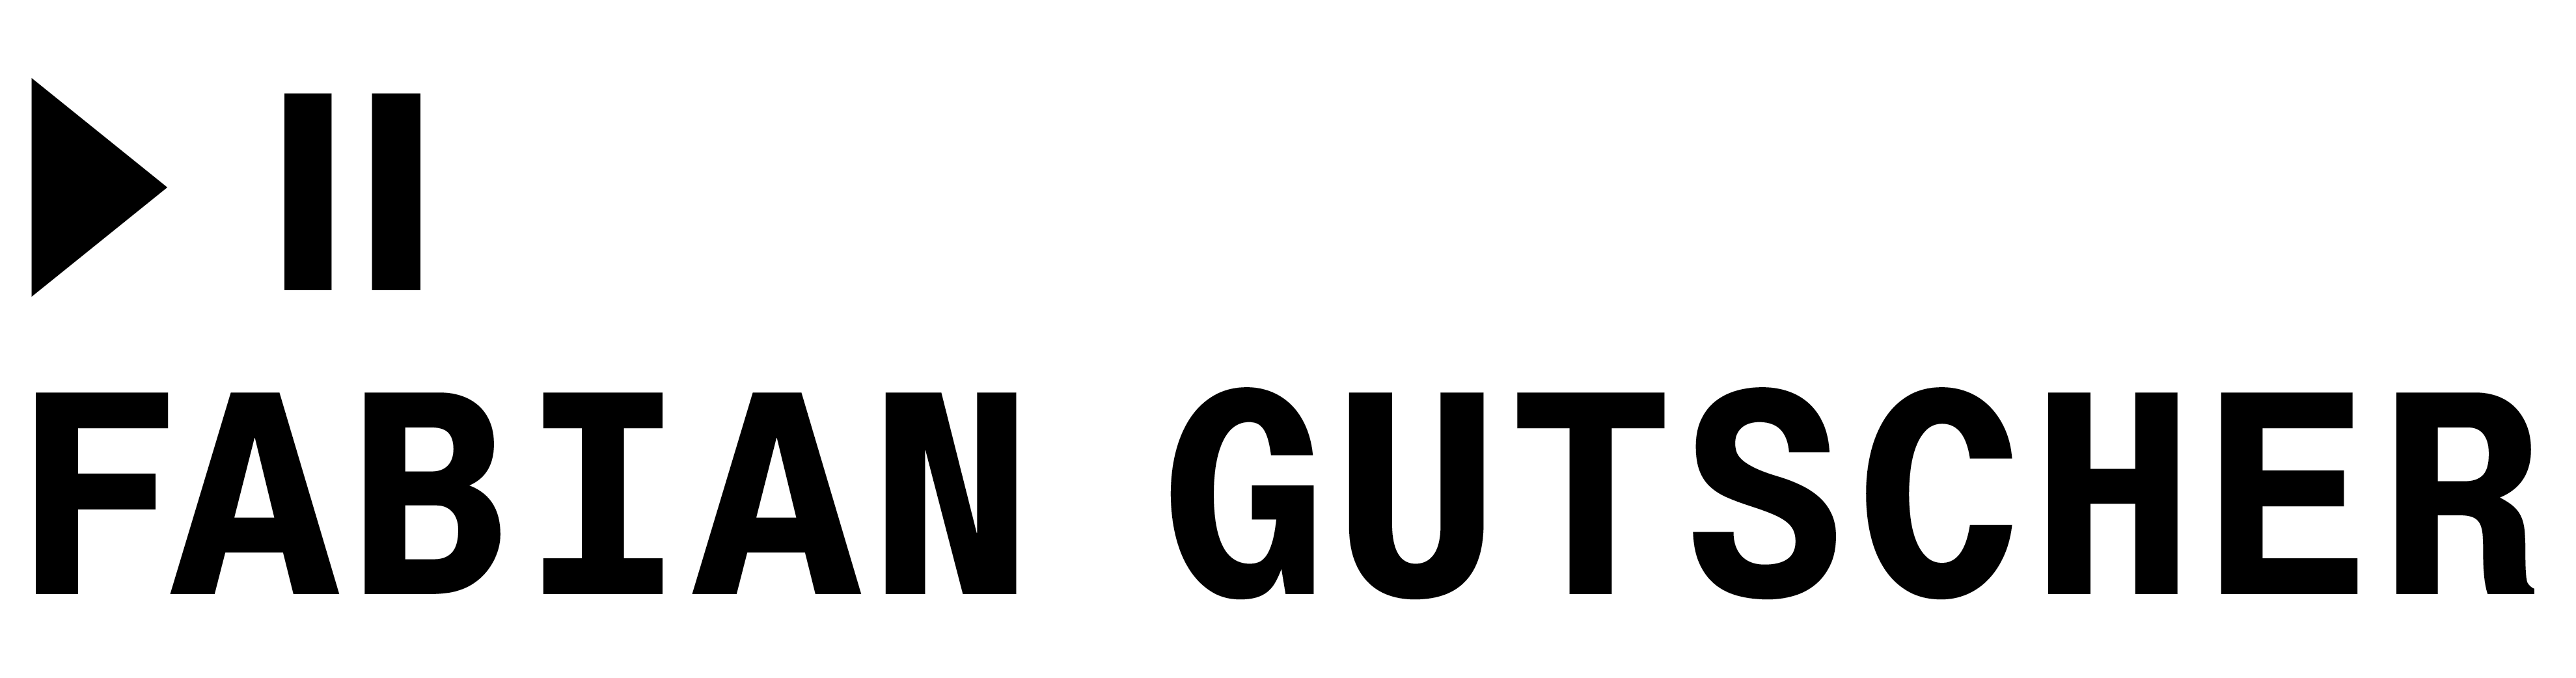 Fabian Gutscher's Logo